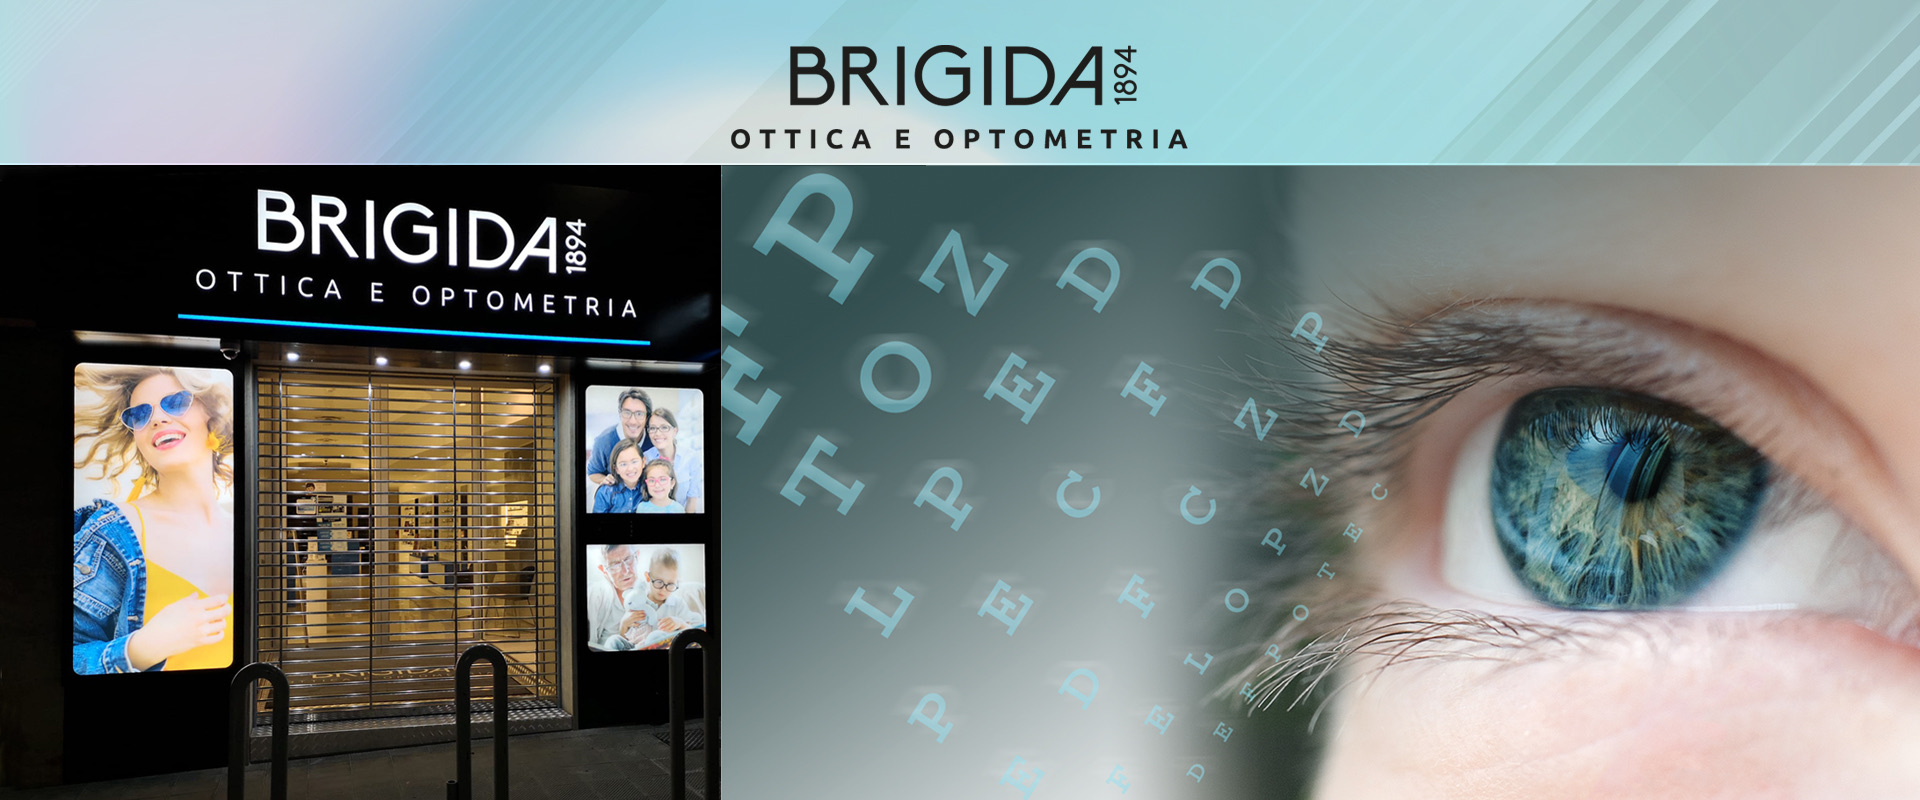 Ottica Brigida